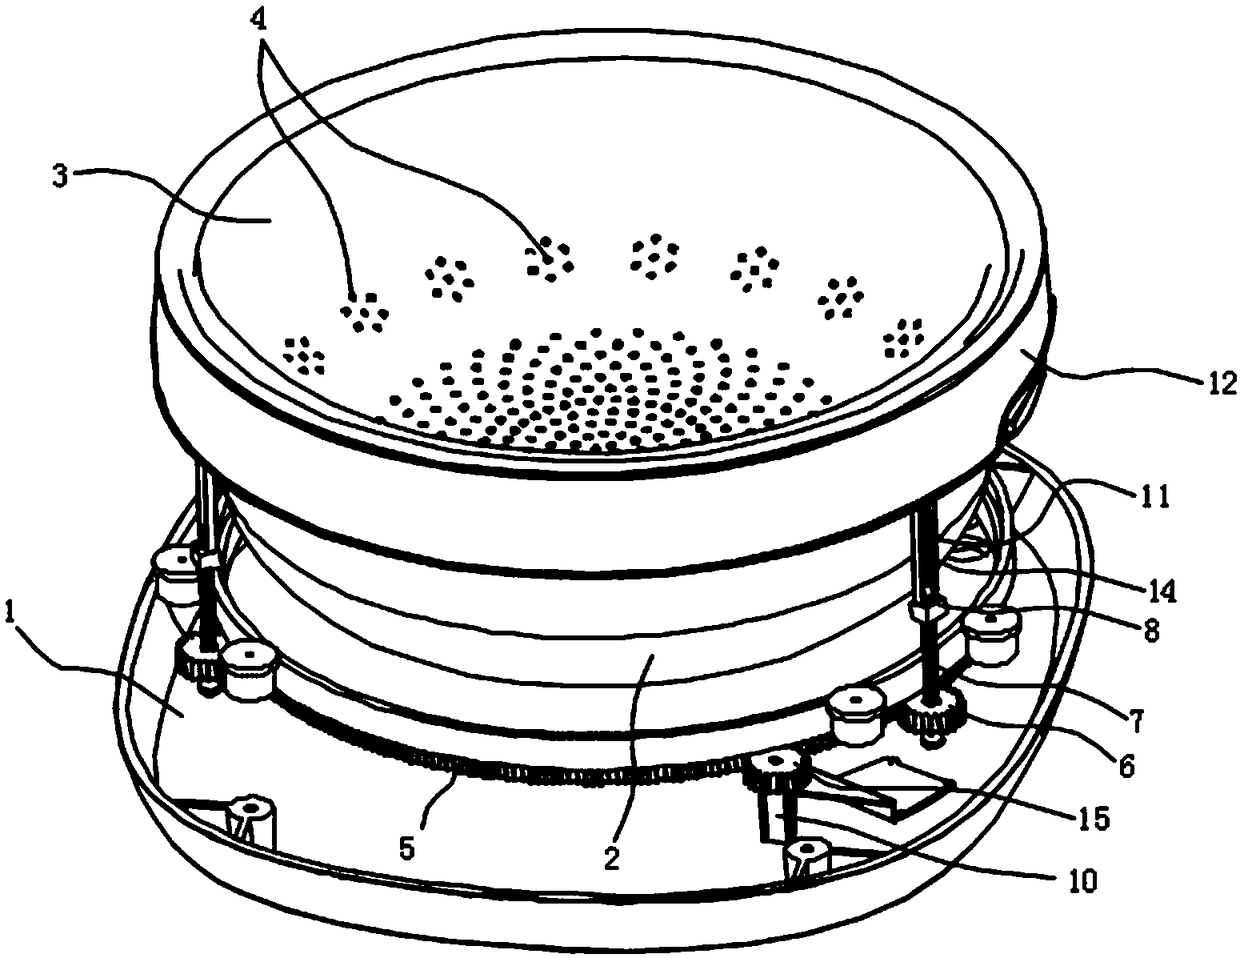 Hot pot with a lifting filter pan